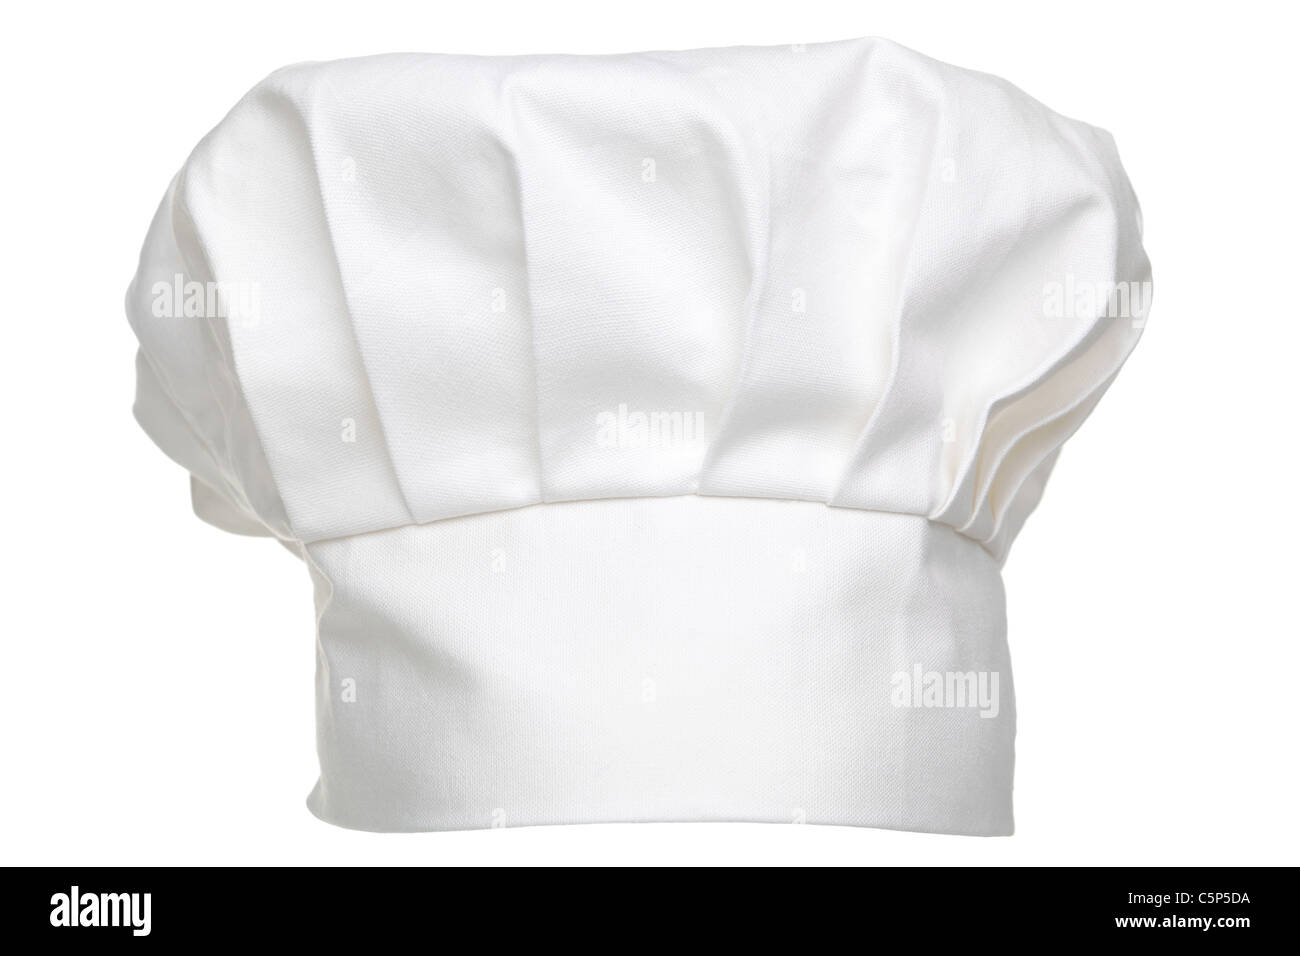 Foto di un chef hat tradizionalmente chiamato toque blanche, isolato su uno sfondo bianco. Foto Stock